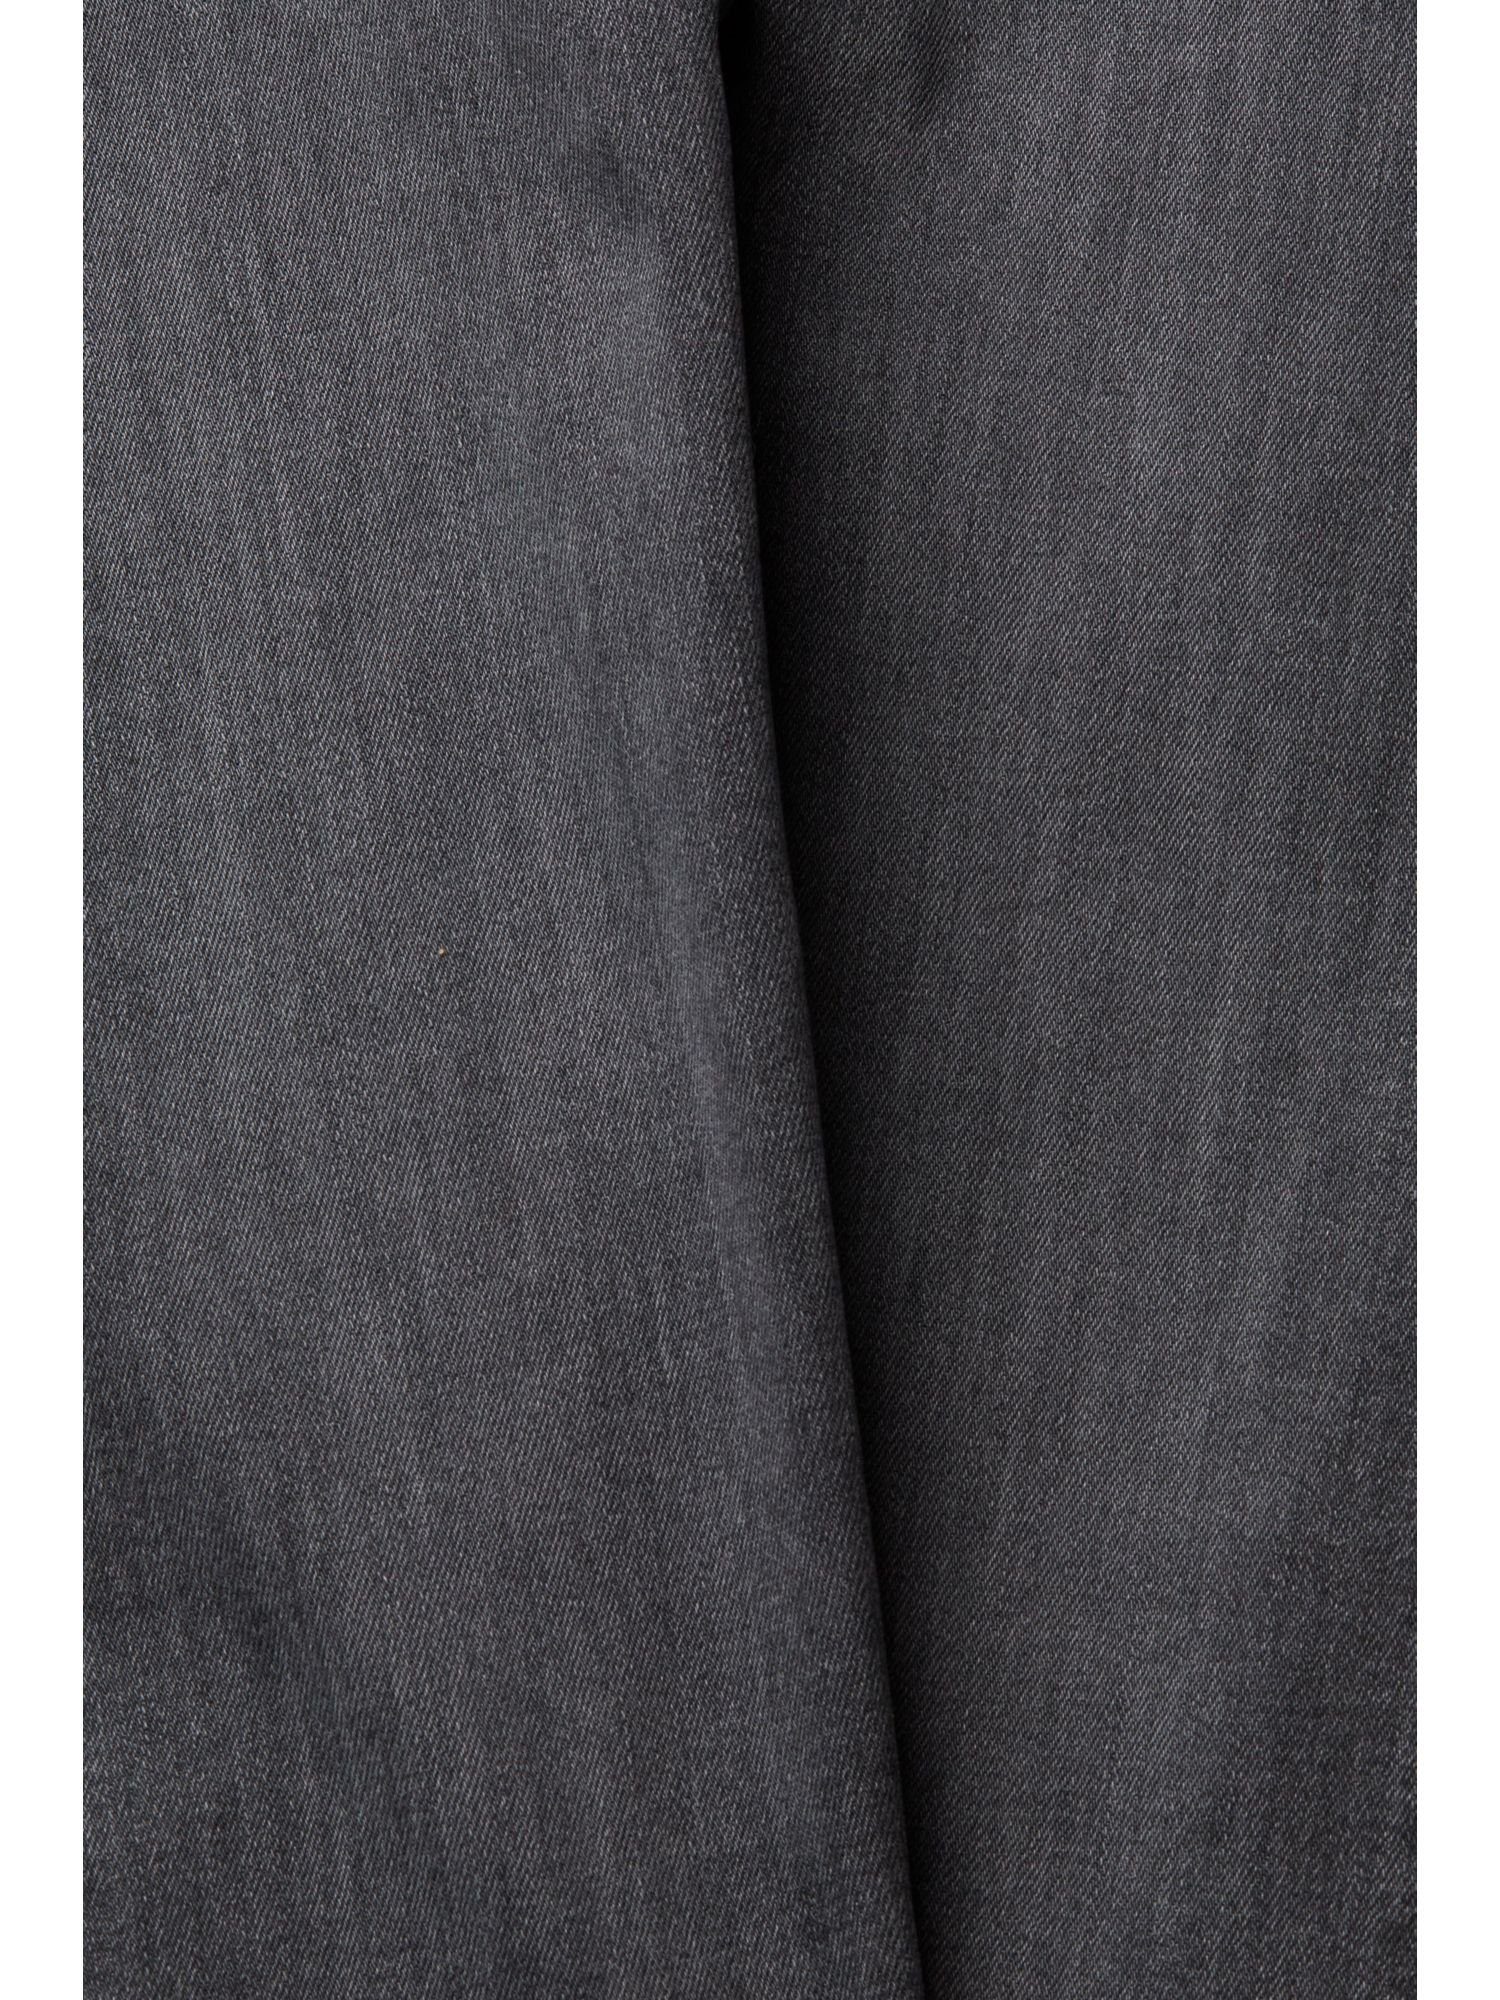 Stretchkomfort Jeans Stretch-Hose mit Esprit